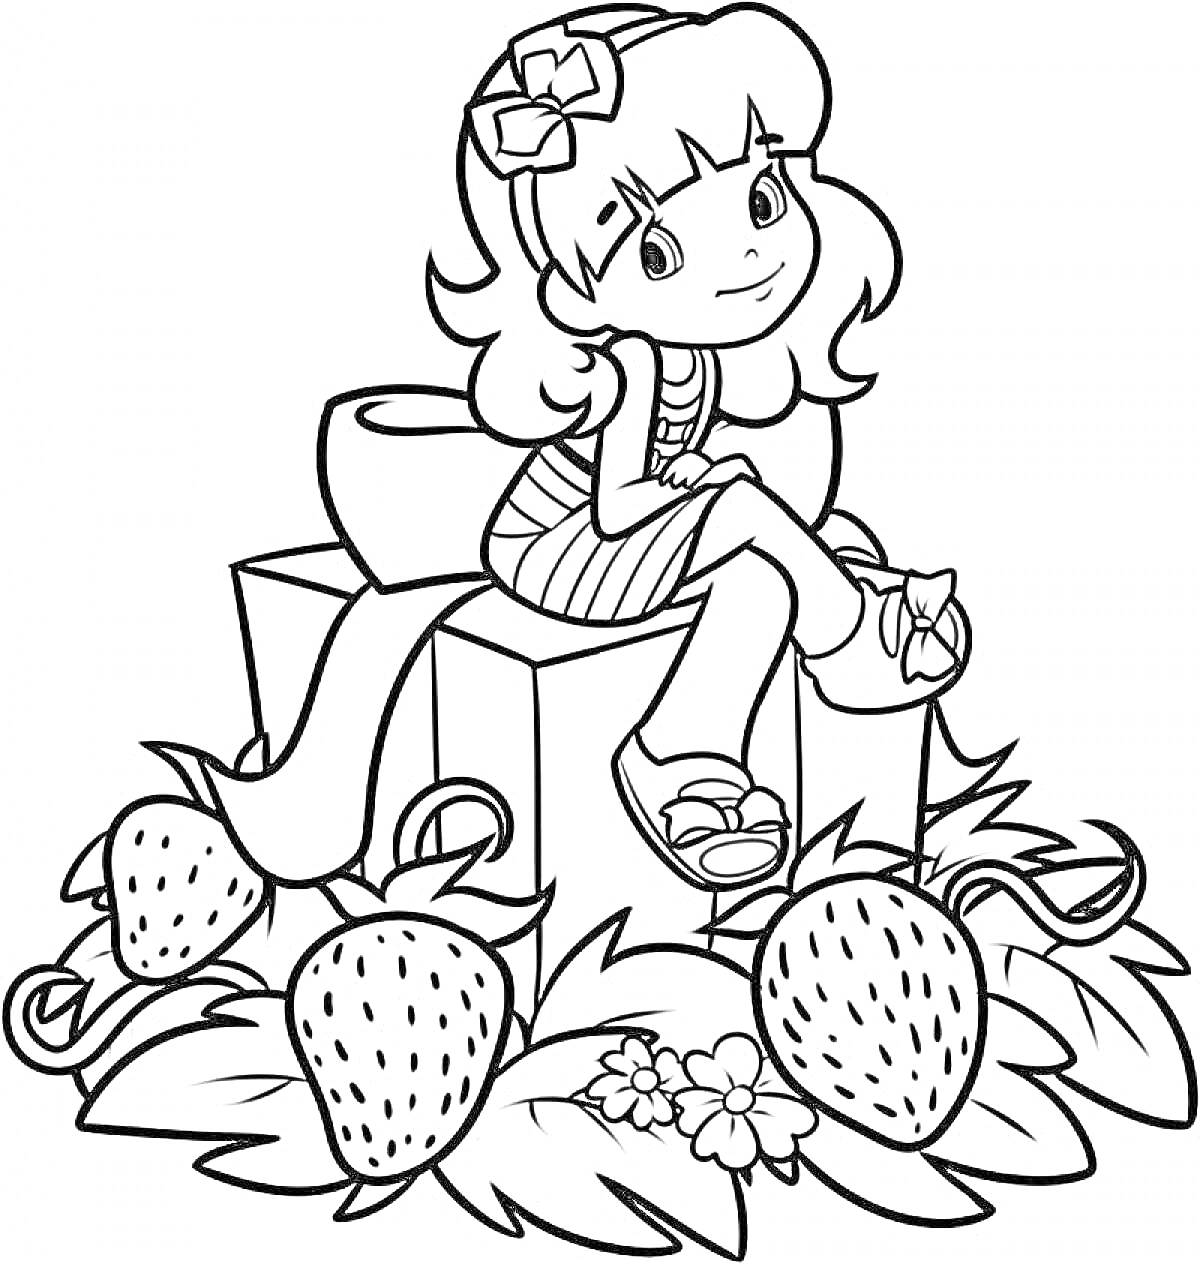 Раскраска Девочка с бантом в волосах сидит на коробке среди клубники и цветов